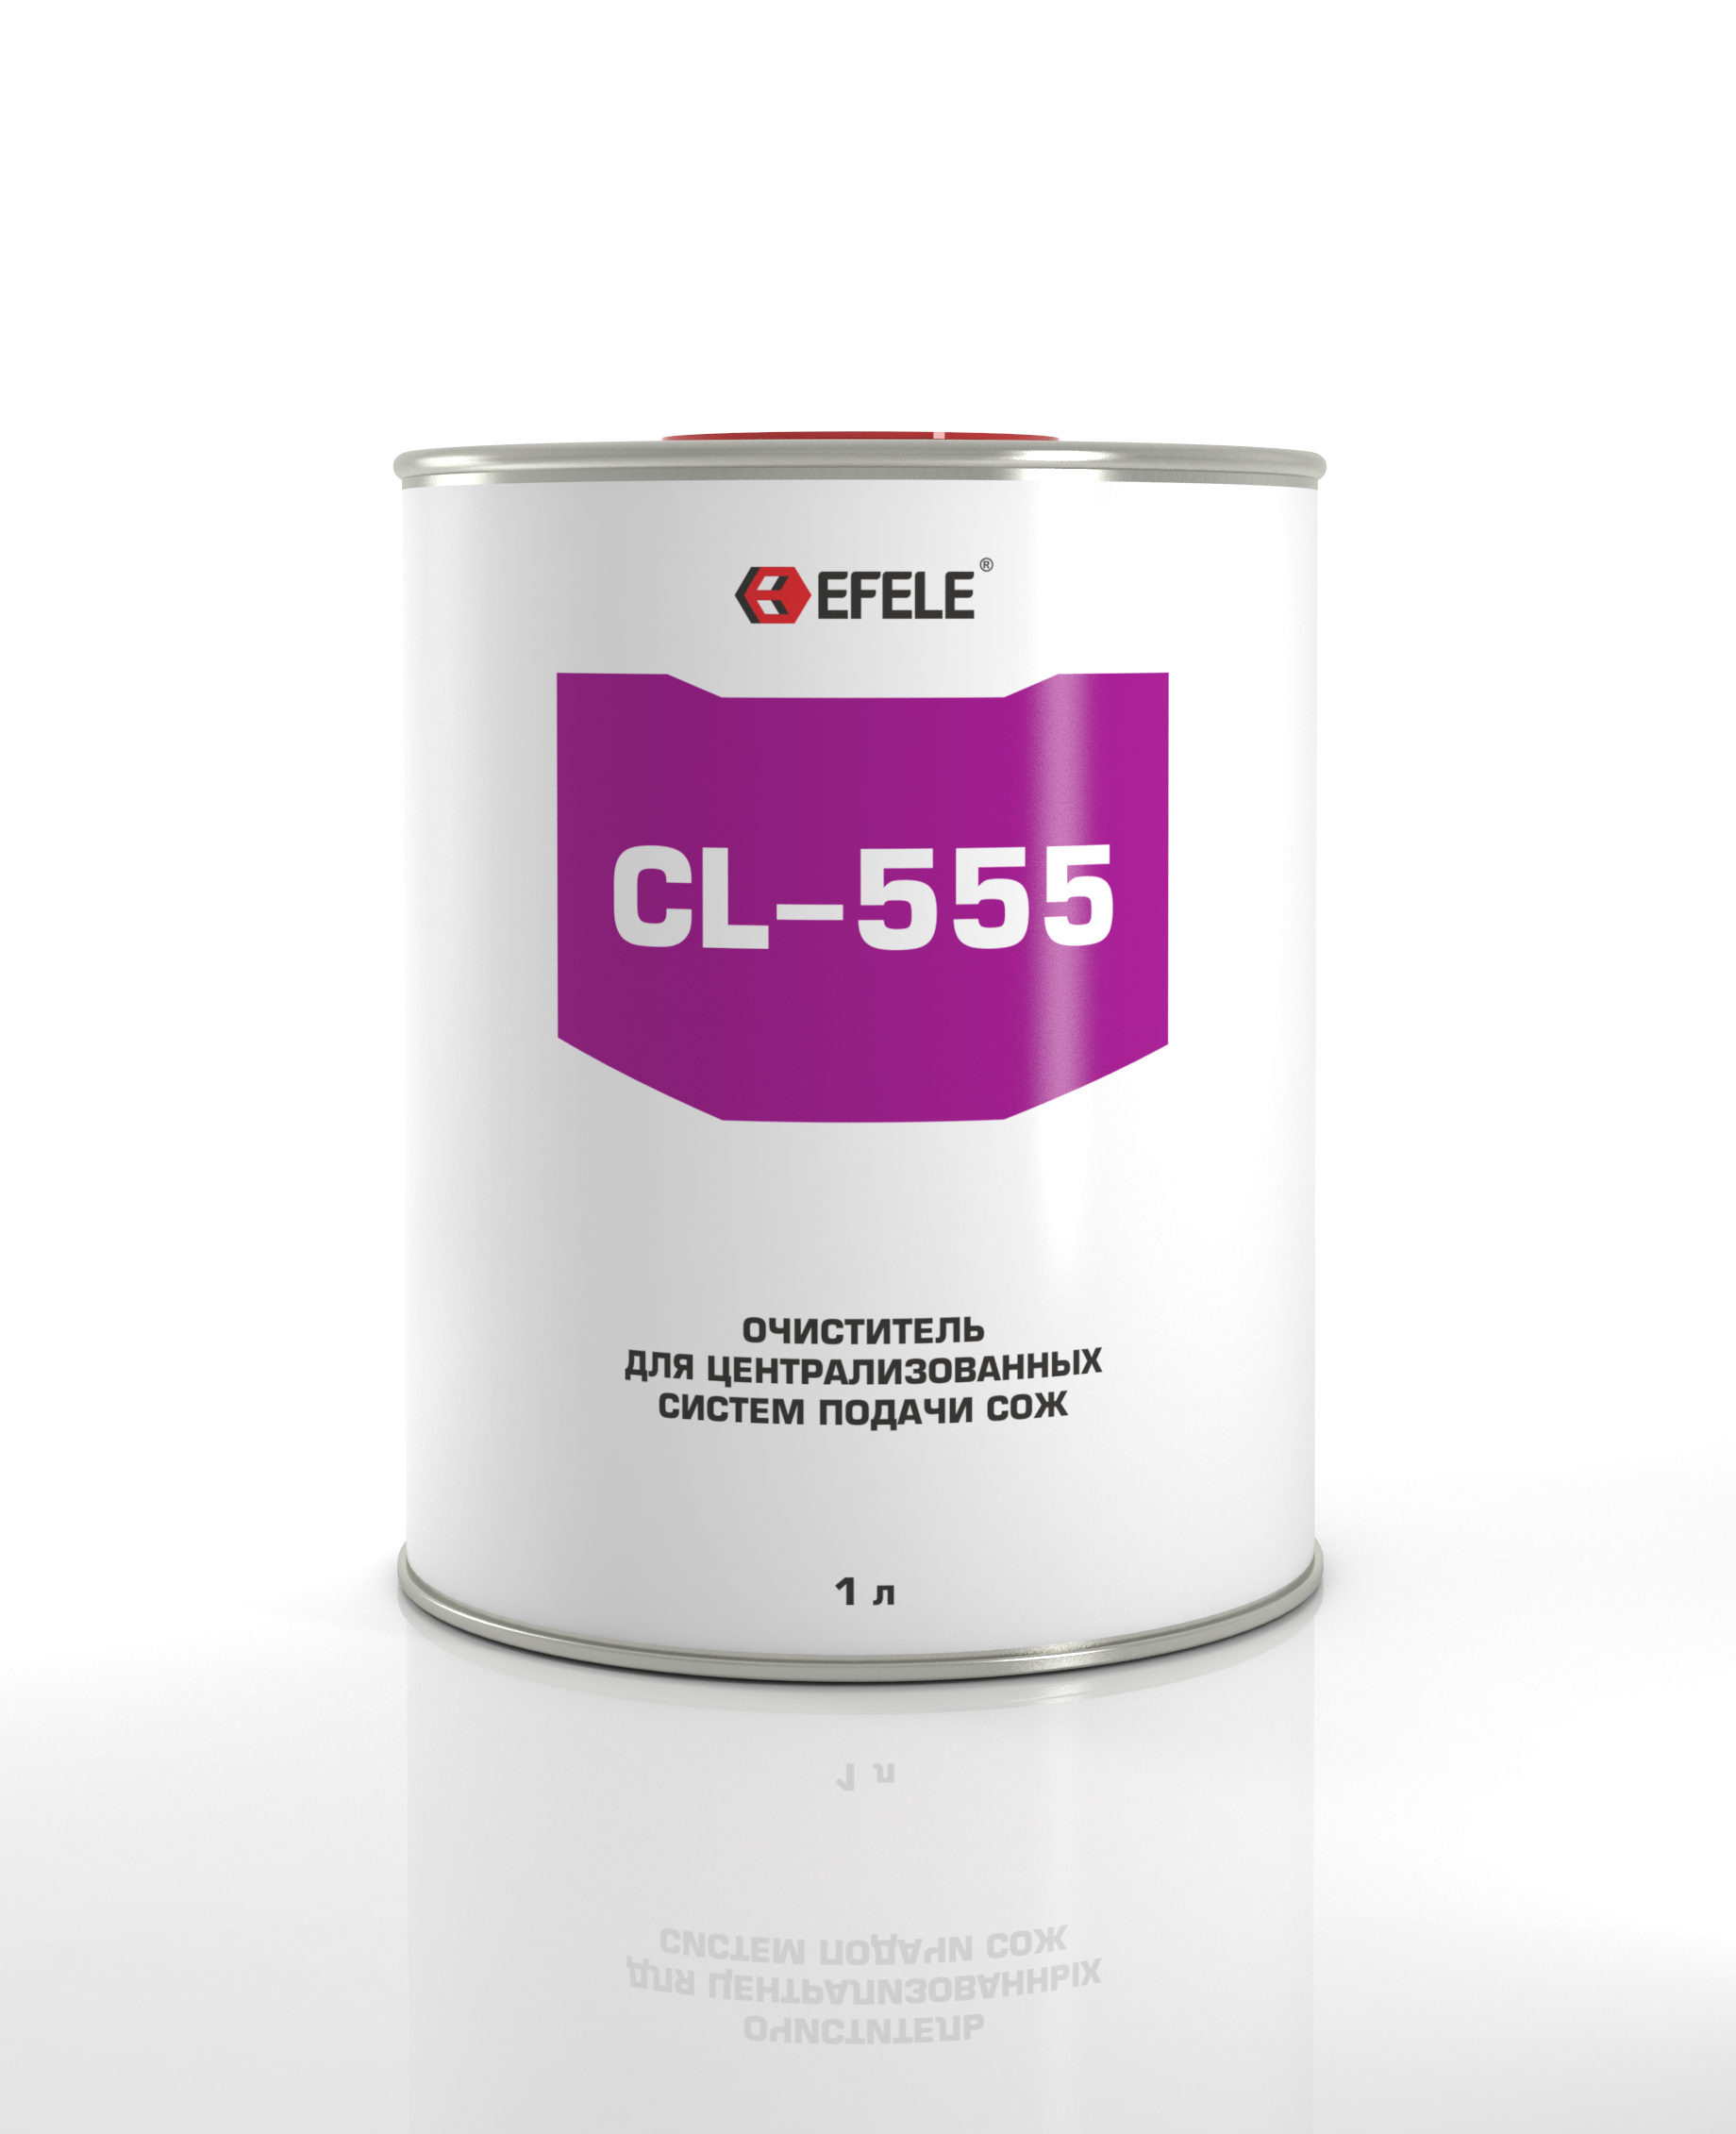 Очиститель для систем подачи сож Efele cl-555 (efl0091211)